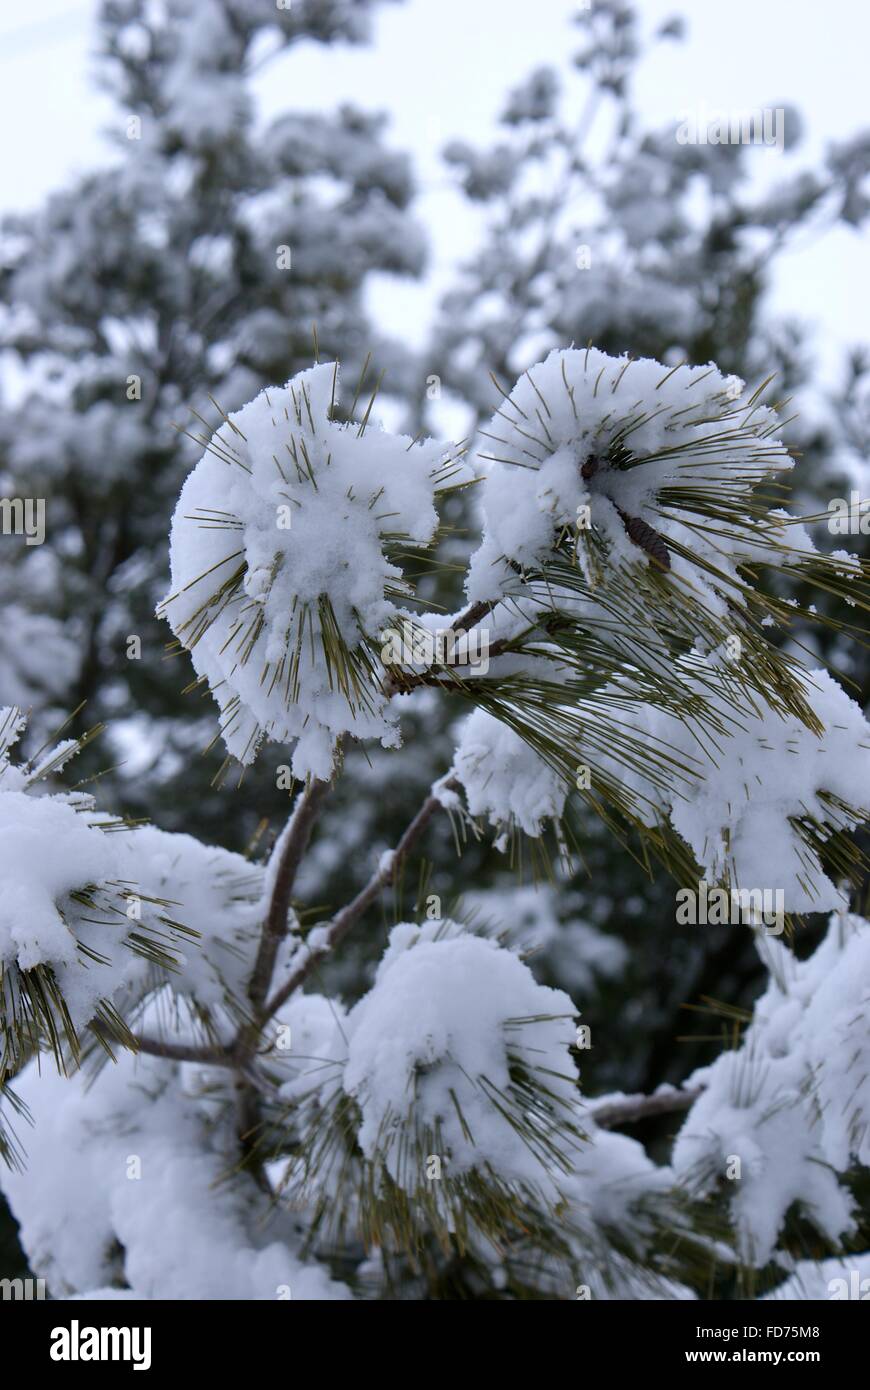 Bella foto della neve mostrato in questo close up di neve sugli aghi di pino. Foto Stock